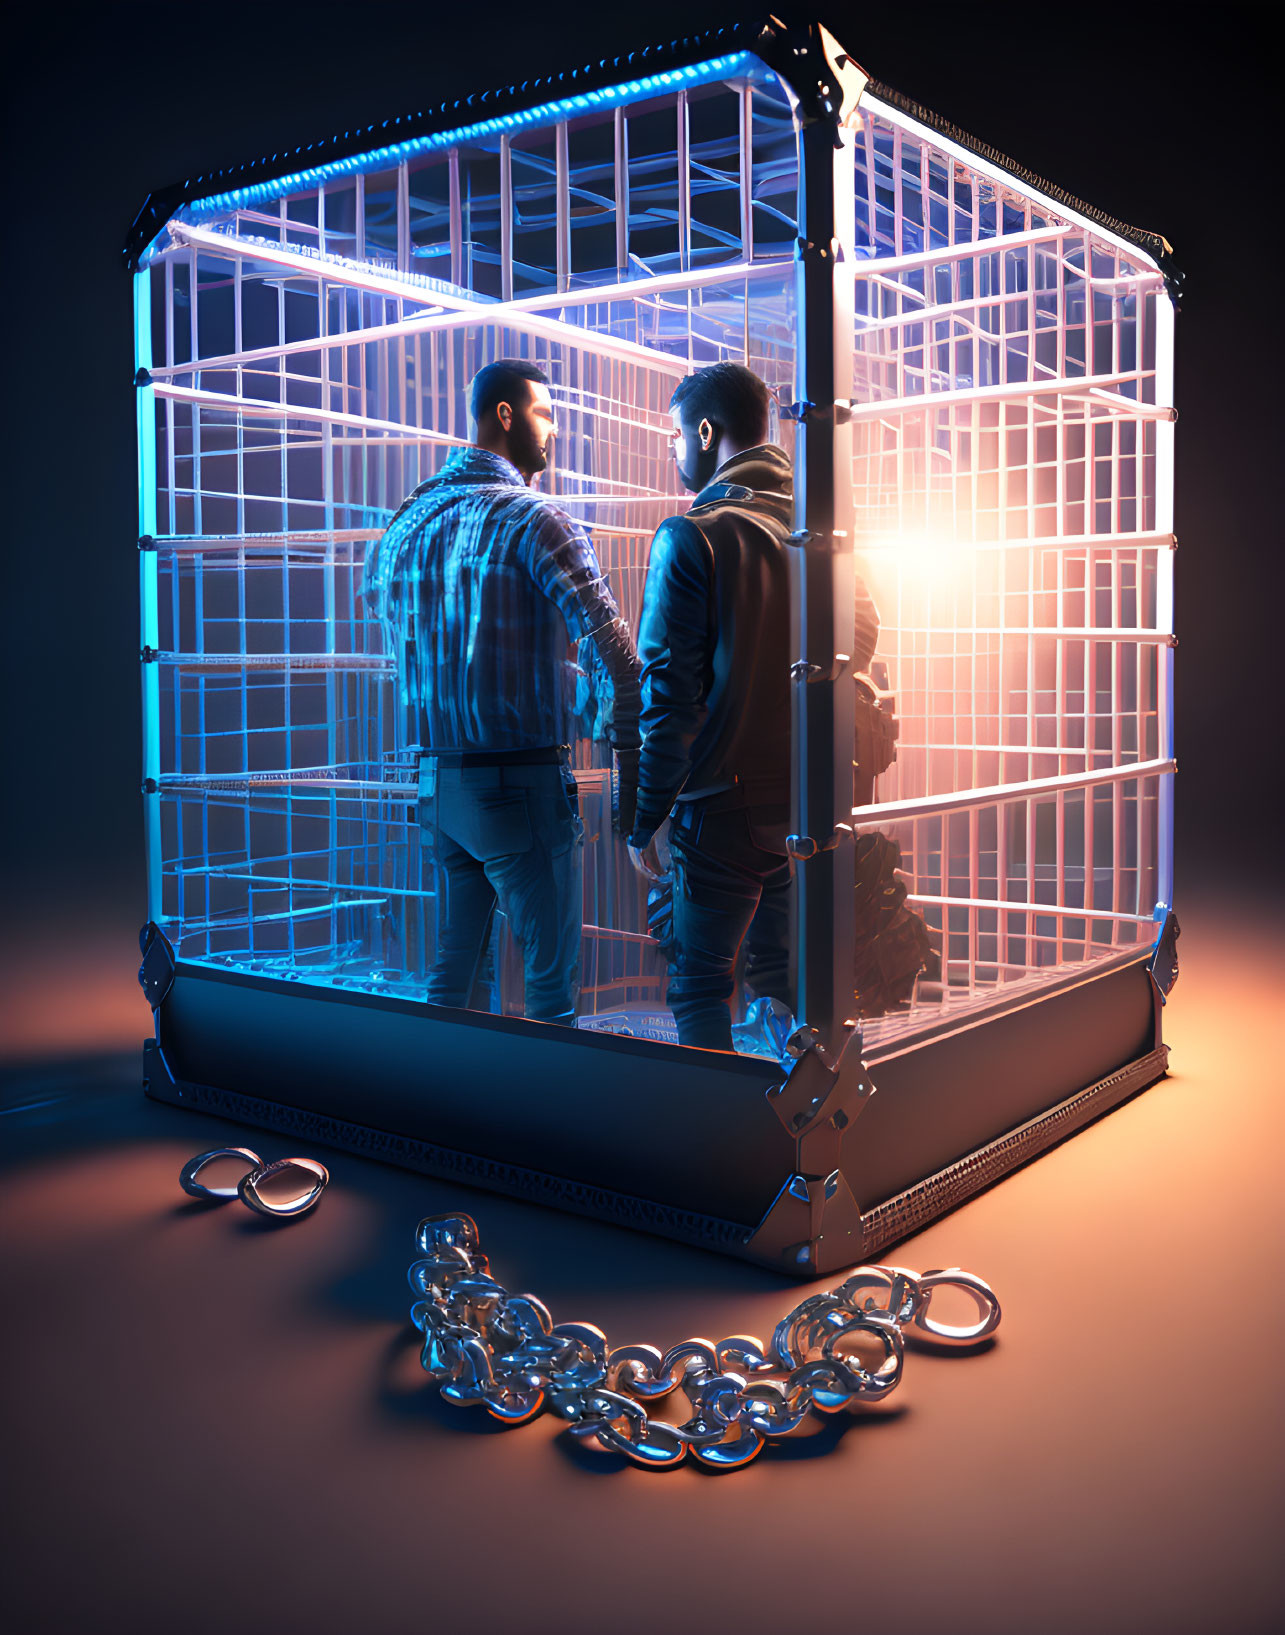 Men inside birdcage with broken chains under soft glow